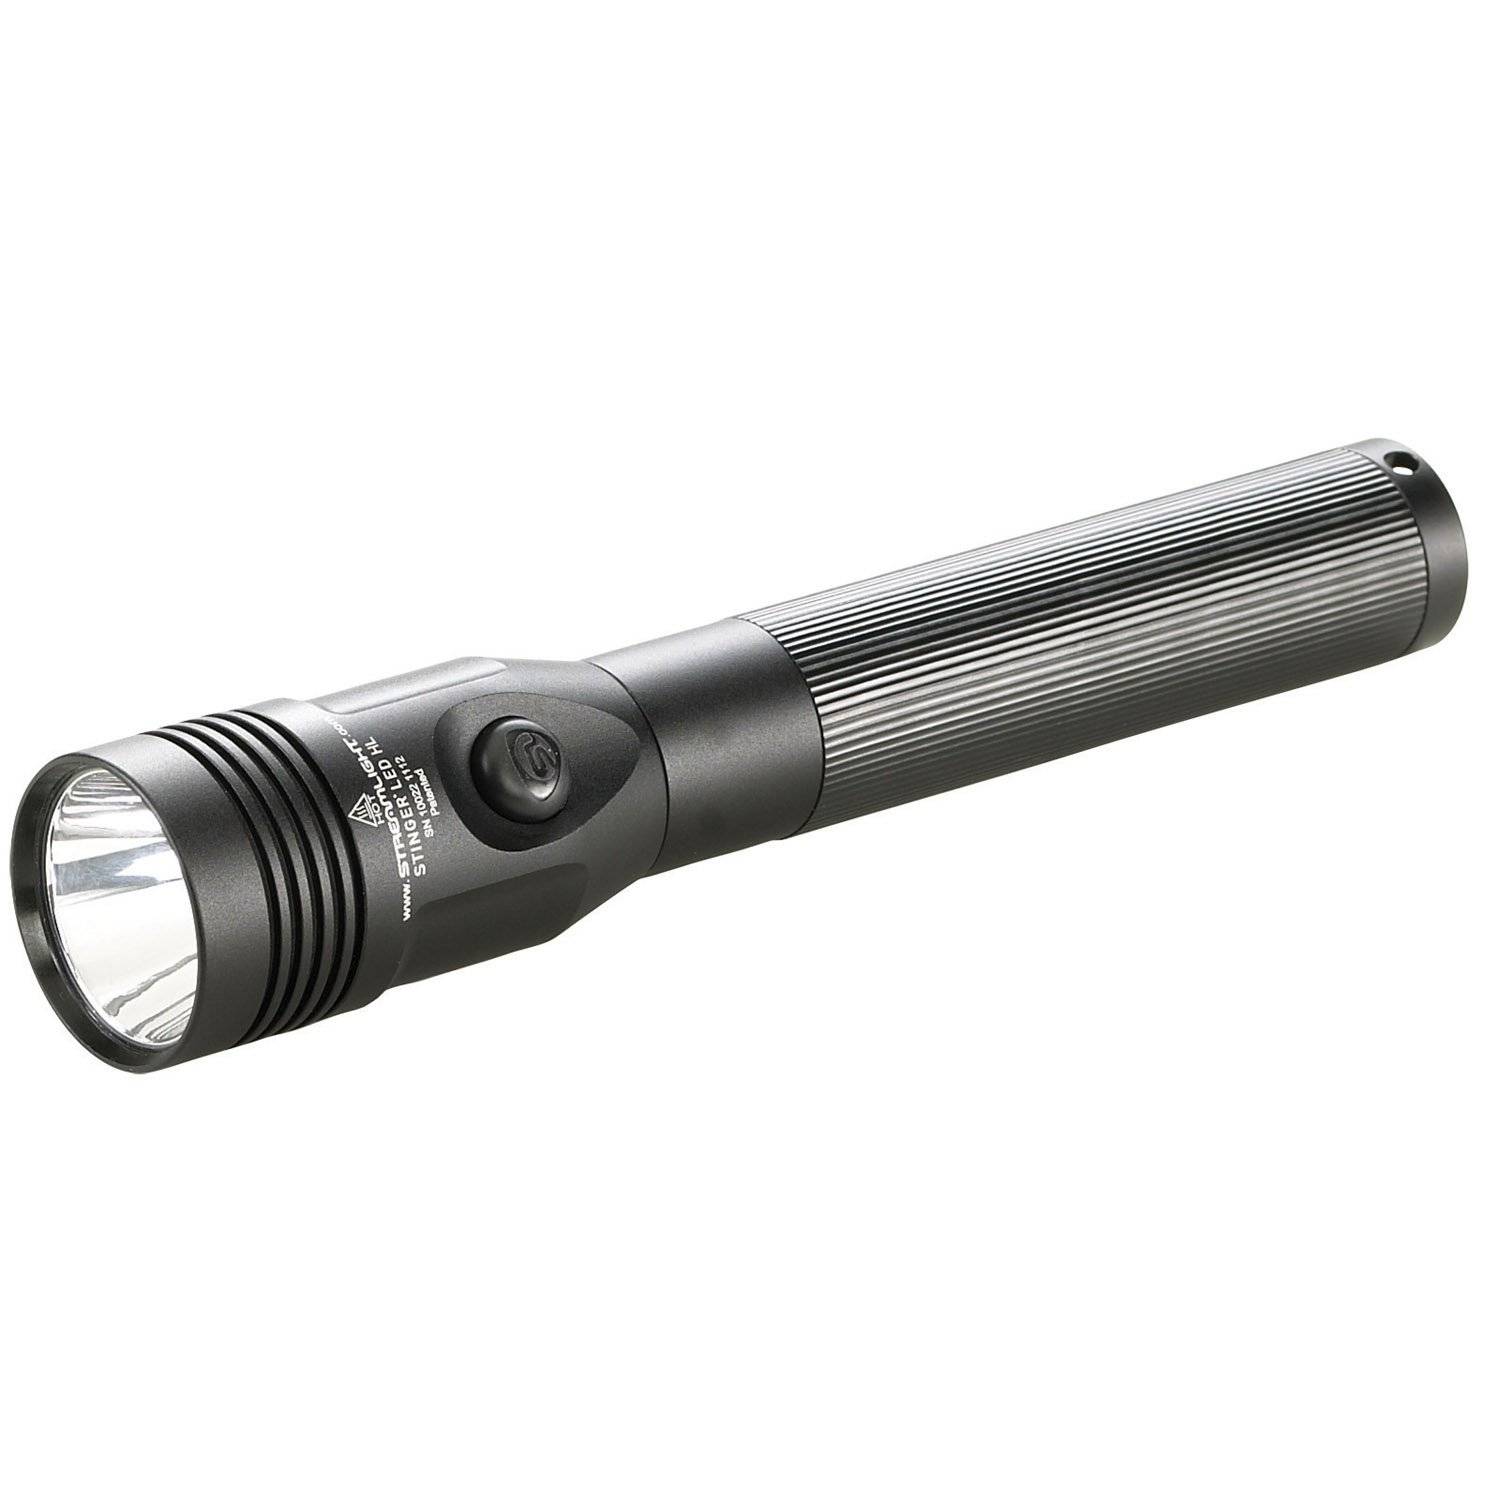 Streamlight Stinger LED HL Rechargable Flashlight (Light Onl